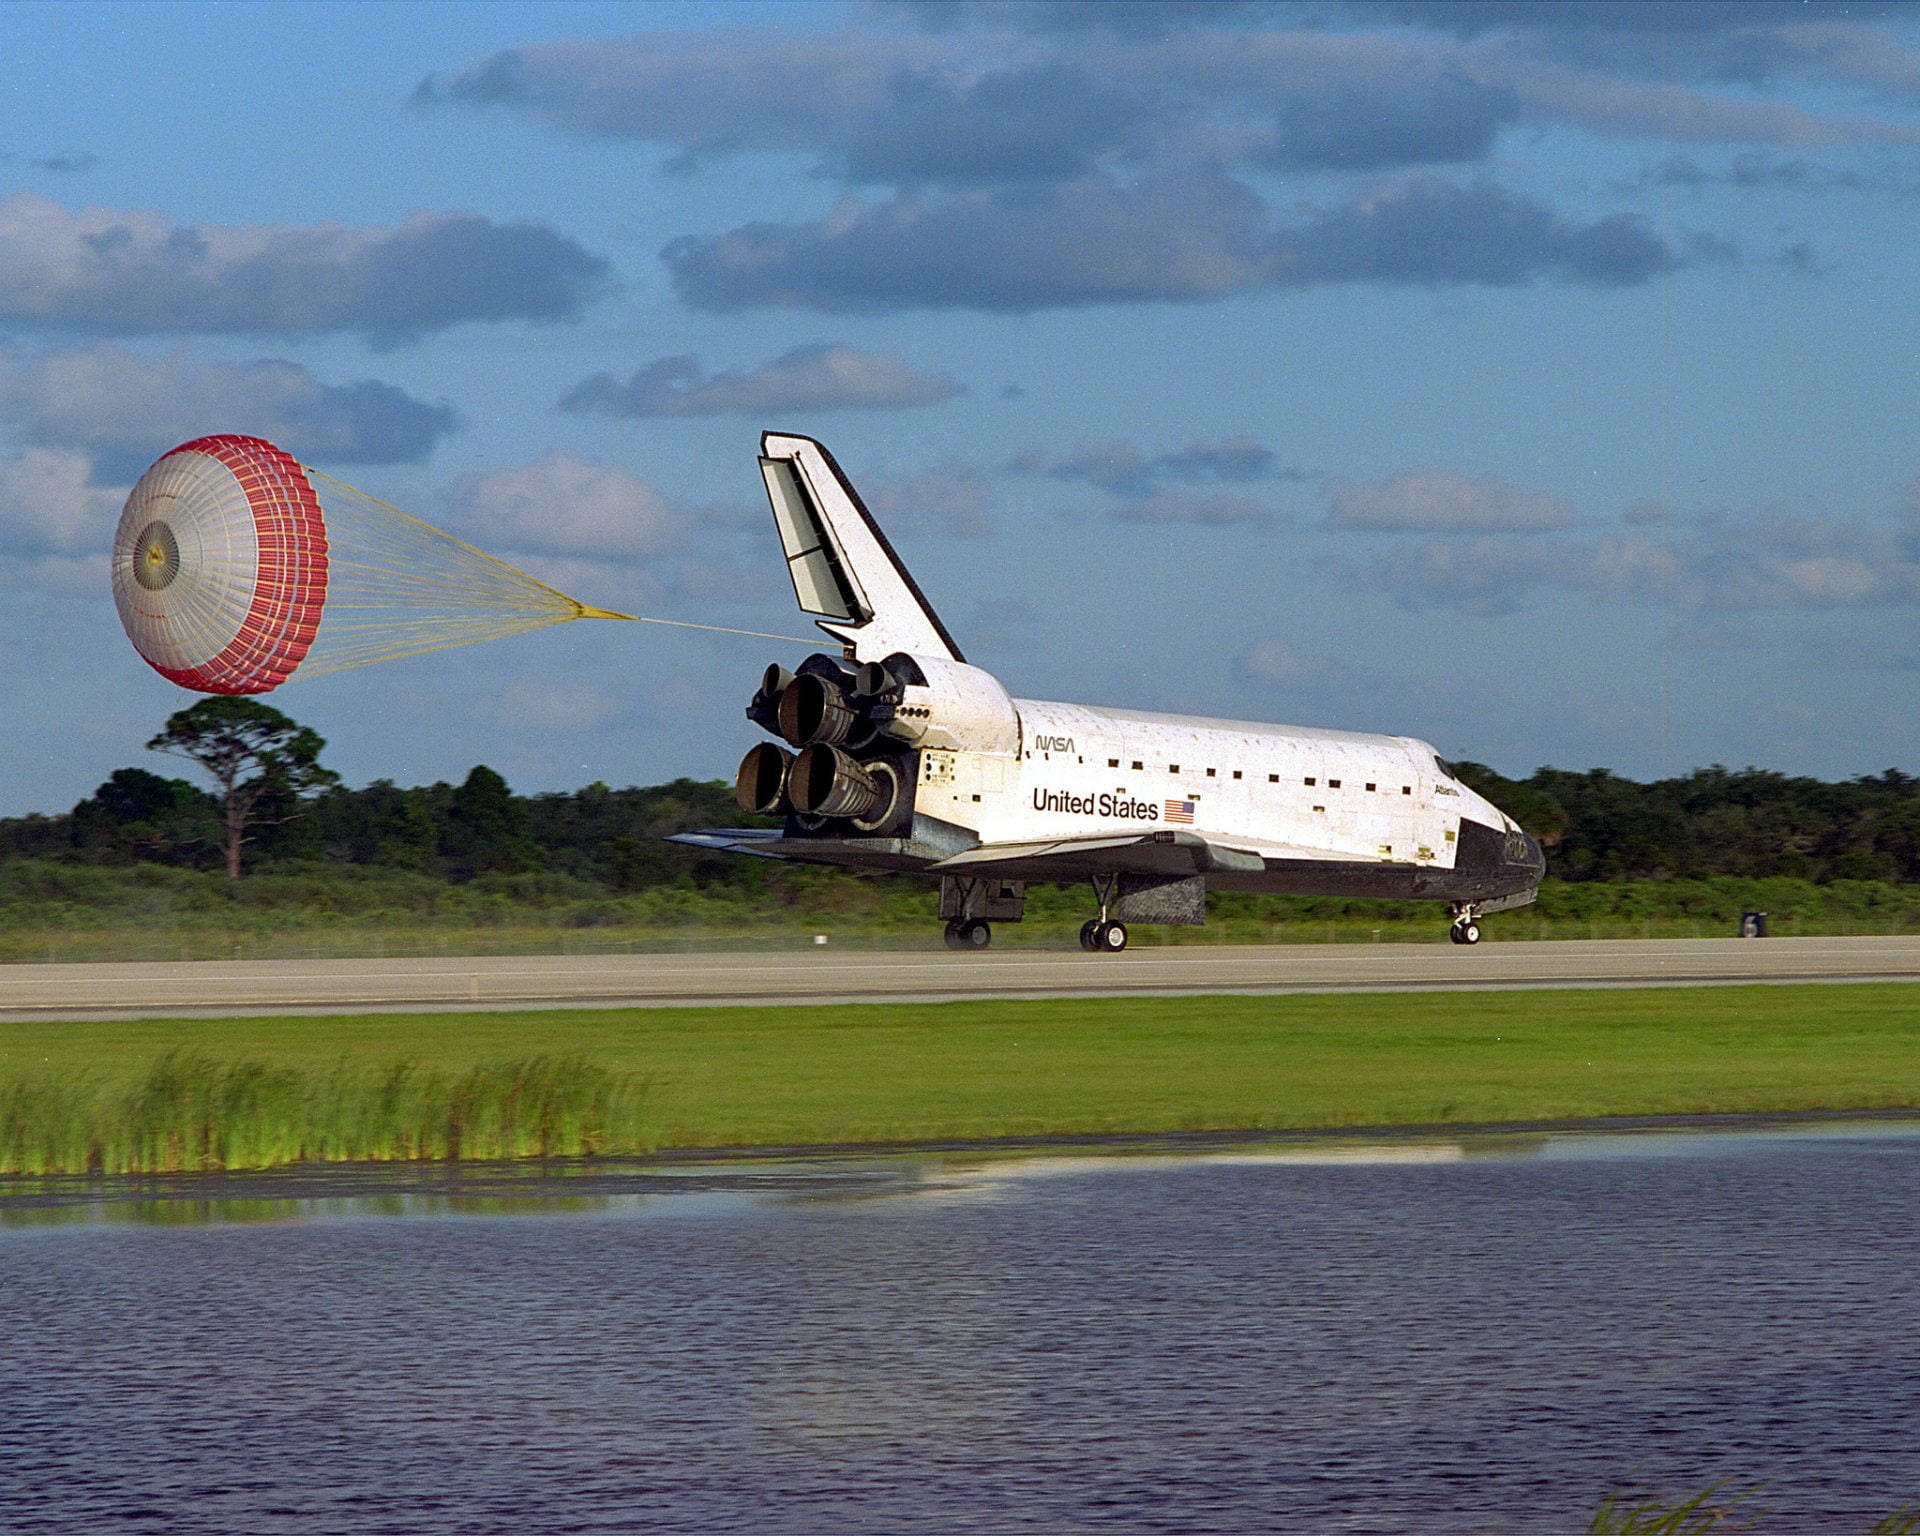 Kennedyspace Center: Shuttle Atlantis Landung Wallpaper